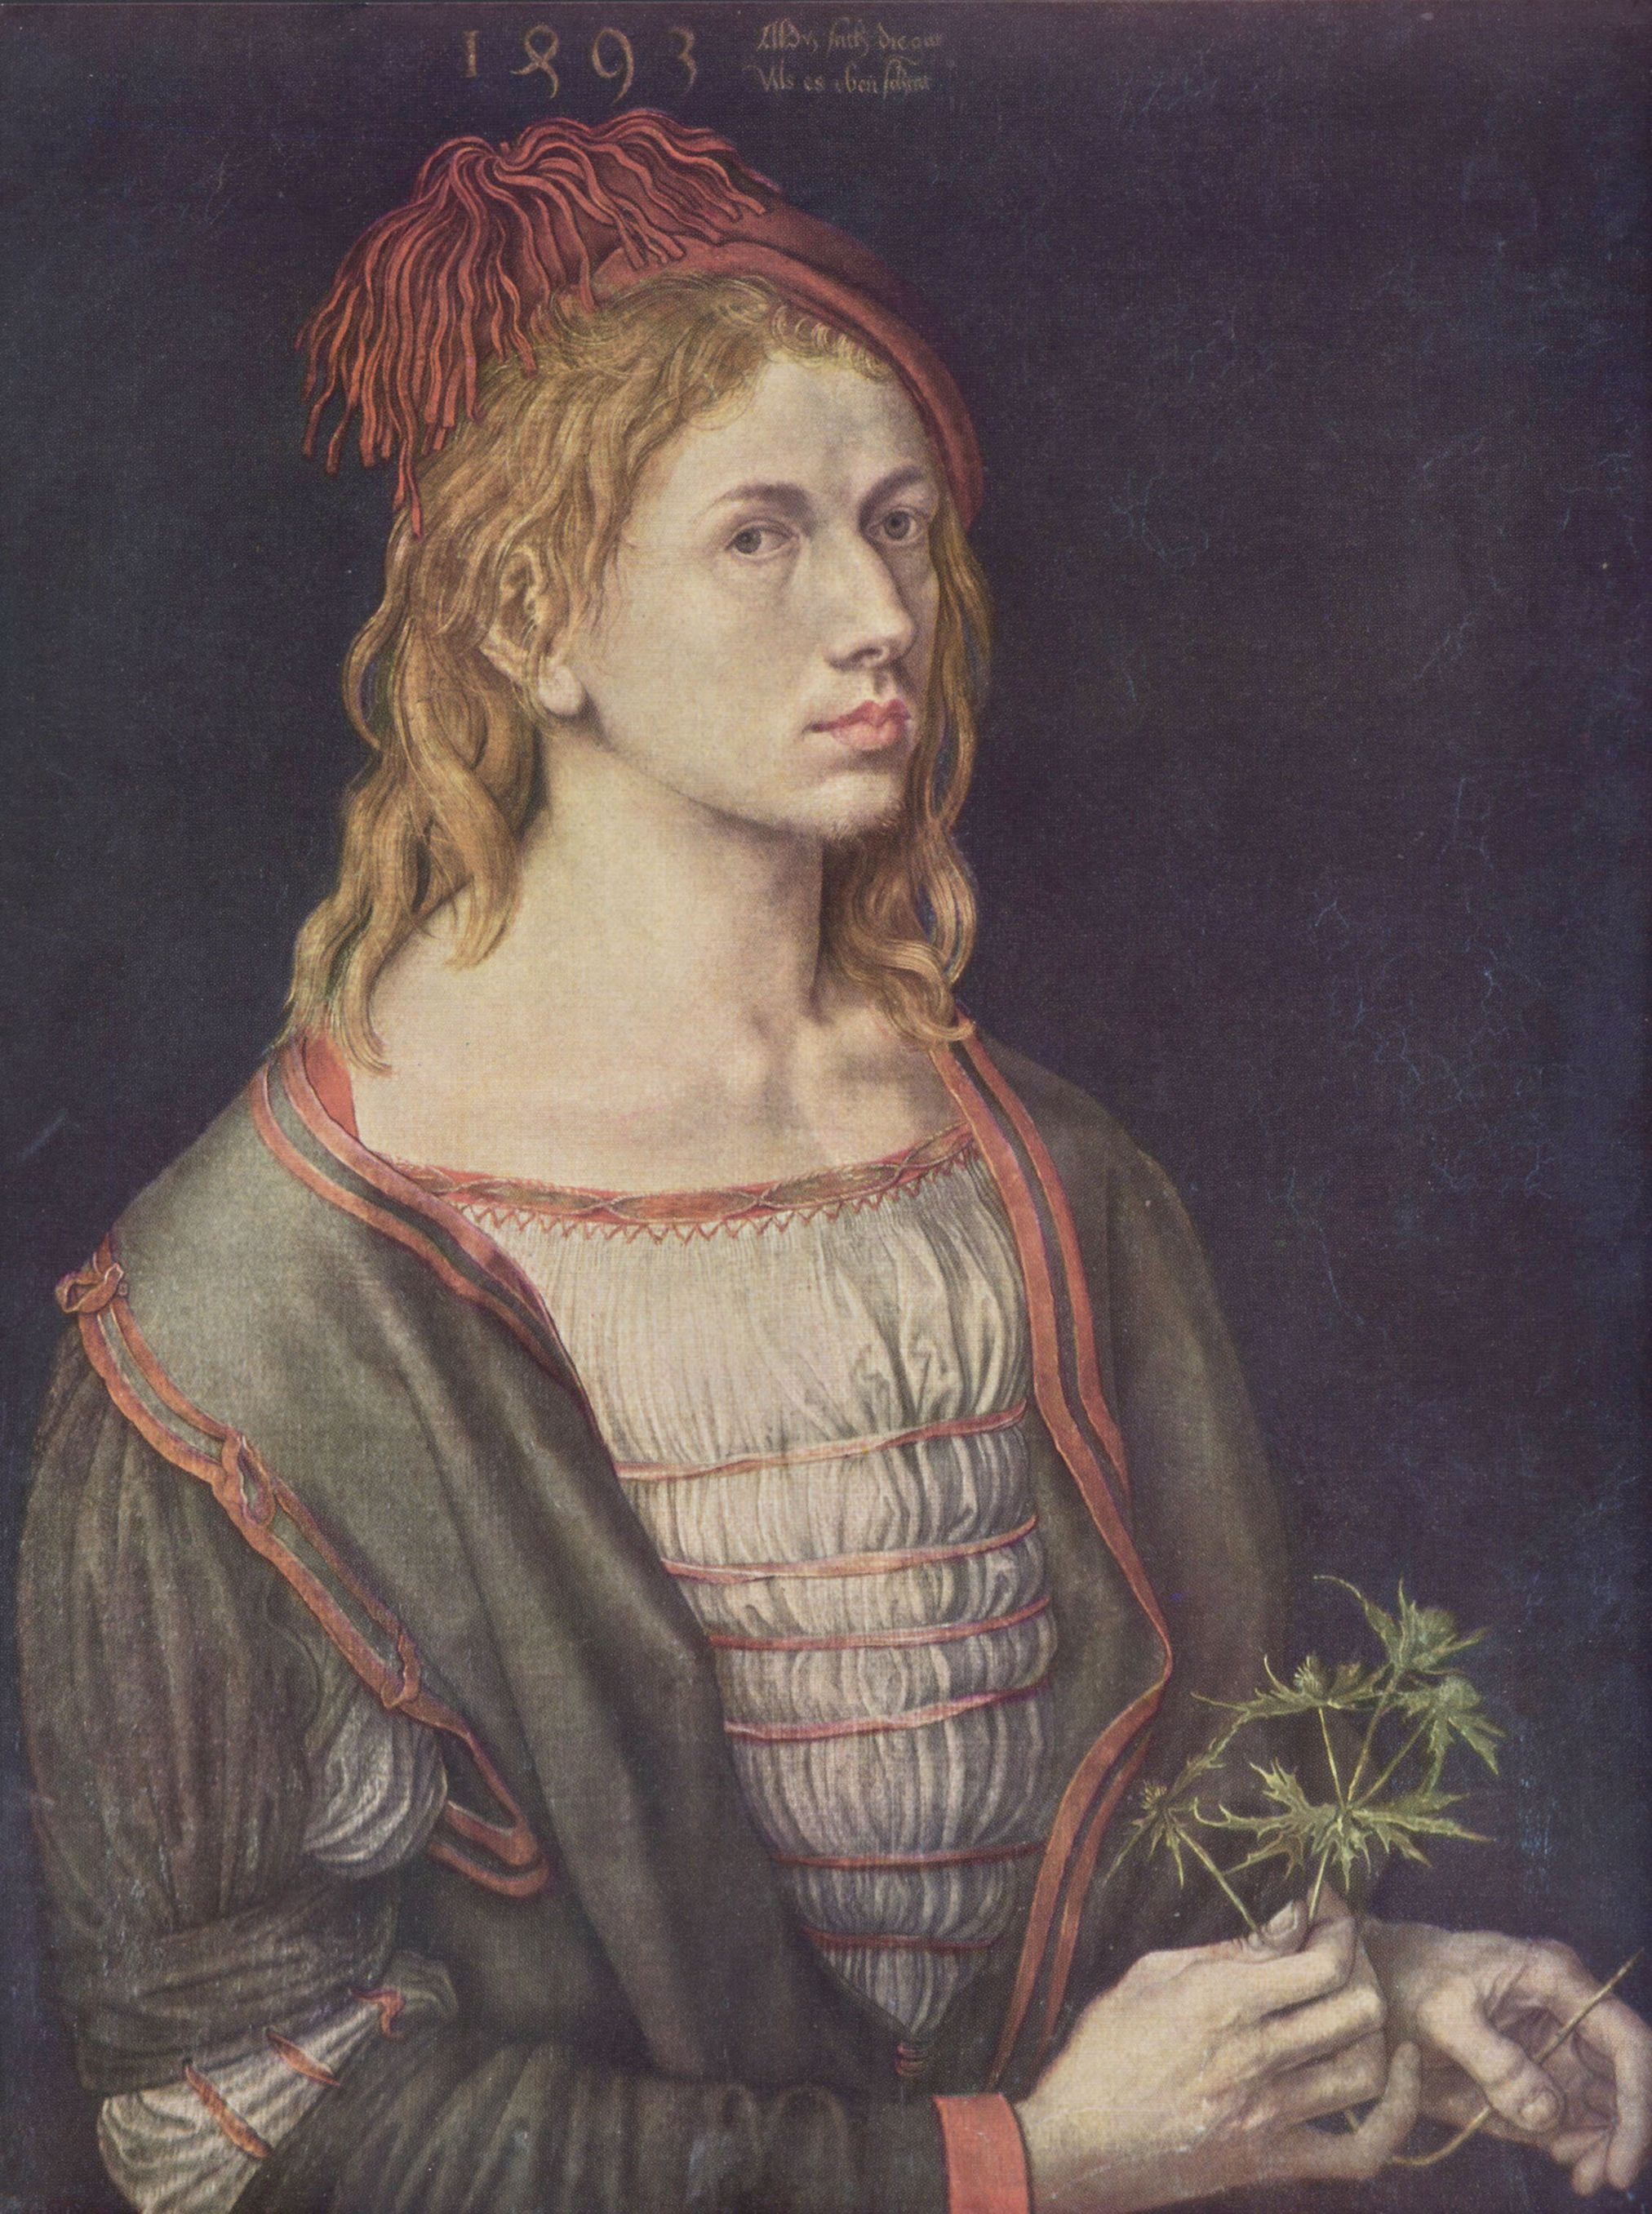 Großbild: Albrecht Dürer: Selbstporträt